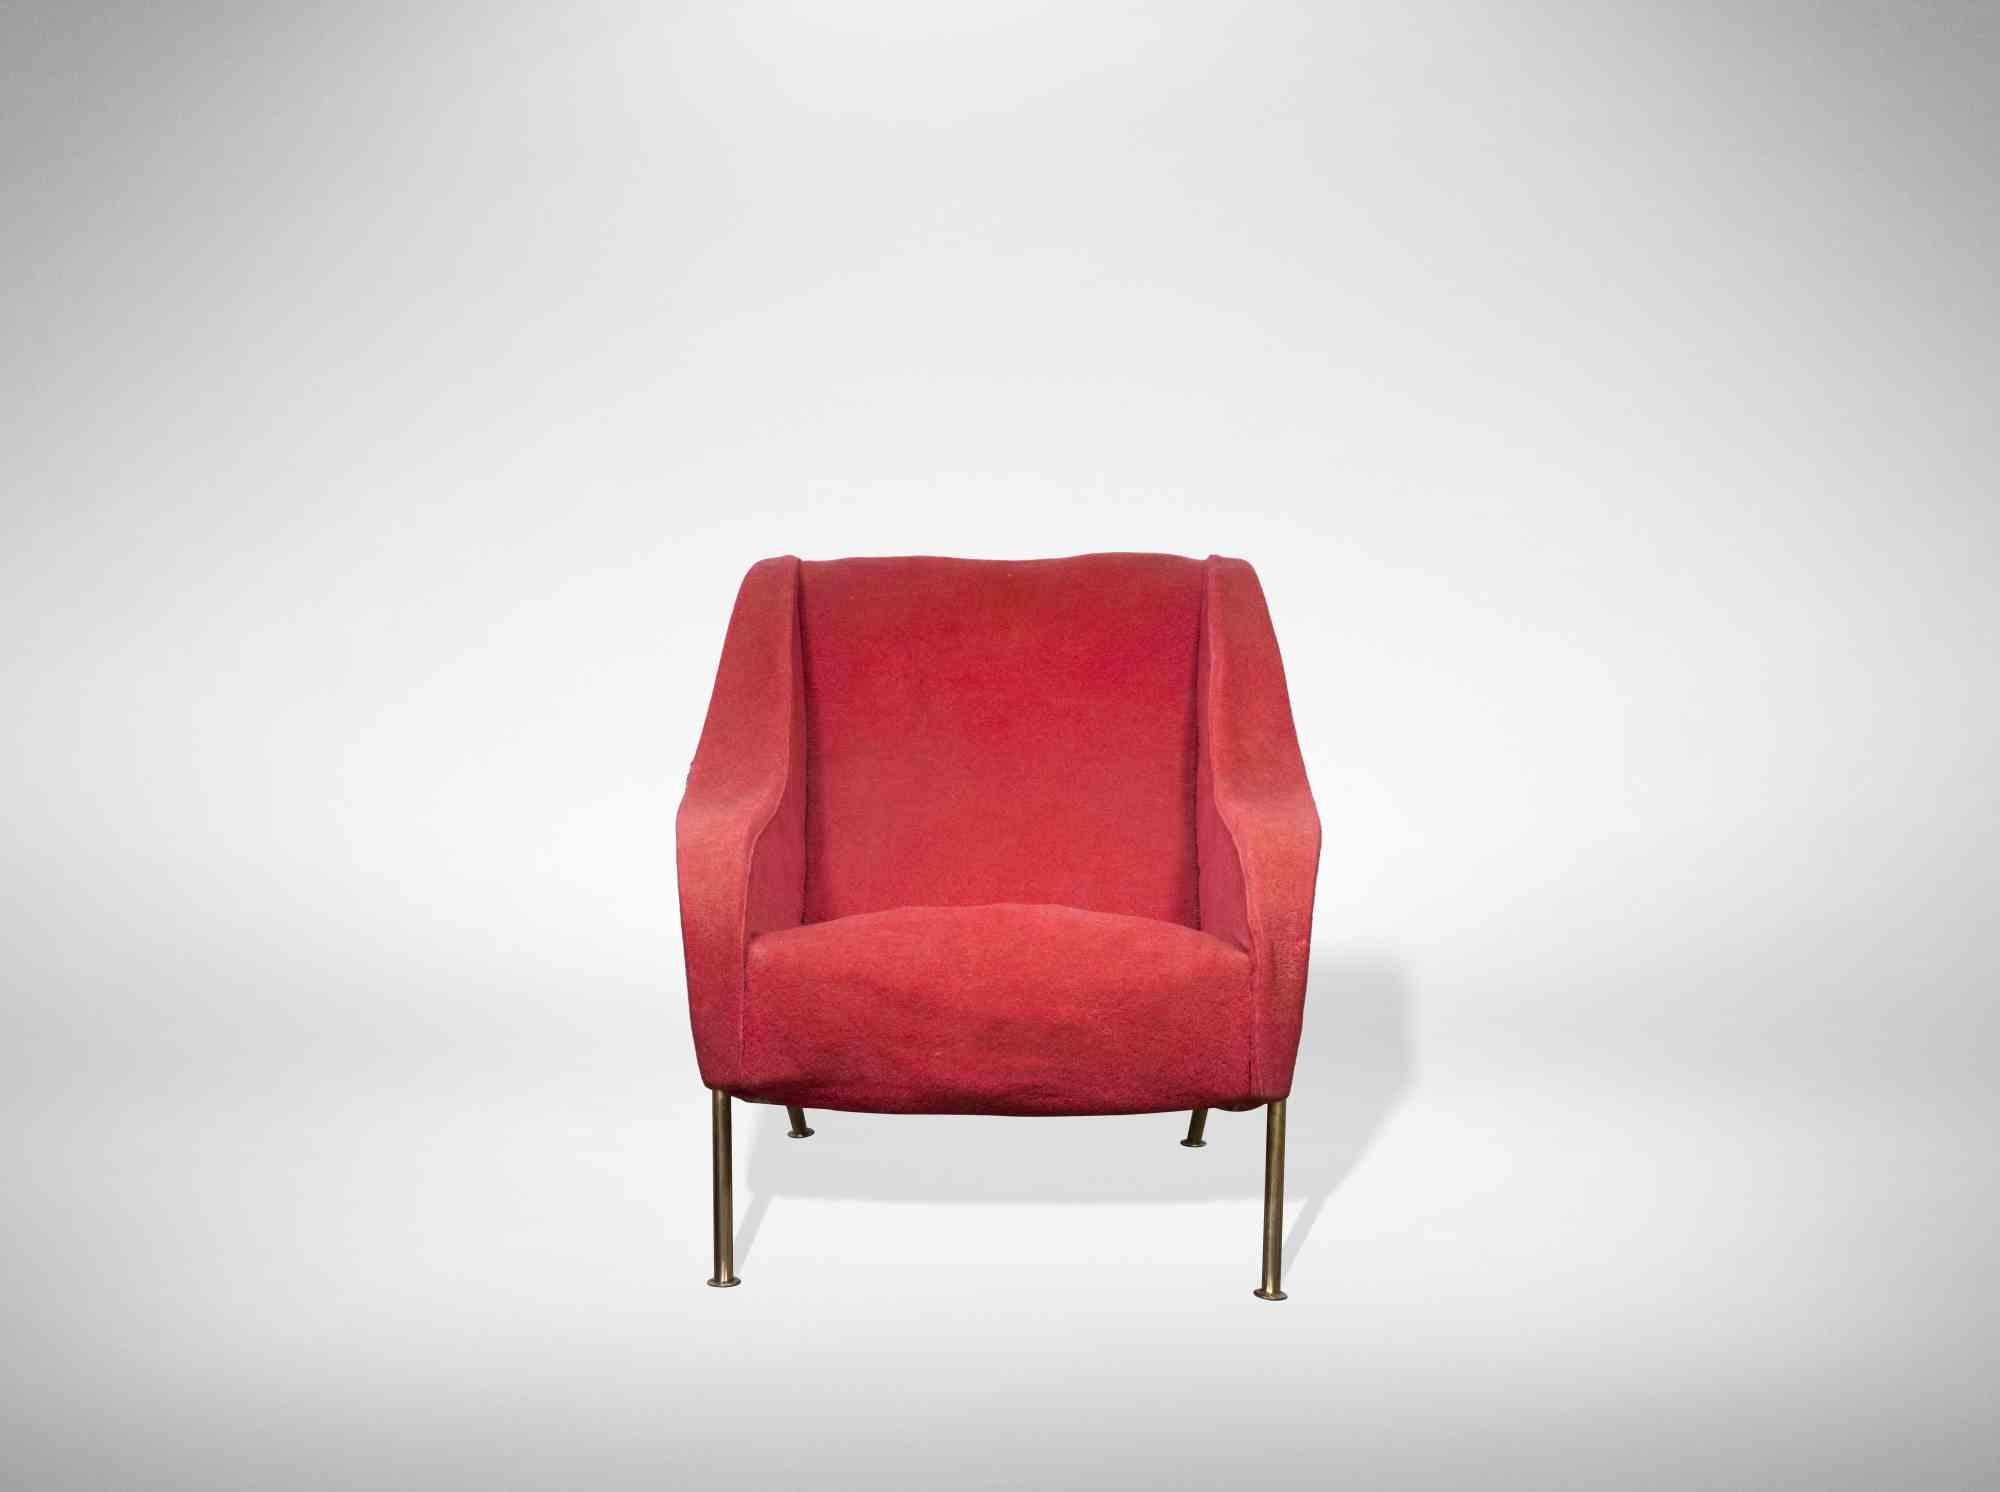 Der rote Sessel ist ein Originaldesign-Objekt, das in Italien in den 1950er Jahren hergestellt wurde.

Struktur aus gepolstertem Holz.

Sockel mit Messingrohr.

Einzigartiges und innovatives Design für die damalige Zeit, sehr bequem und